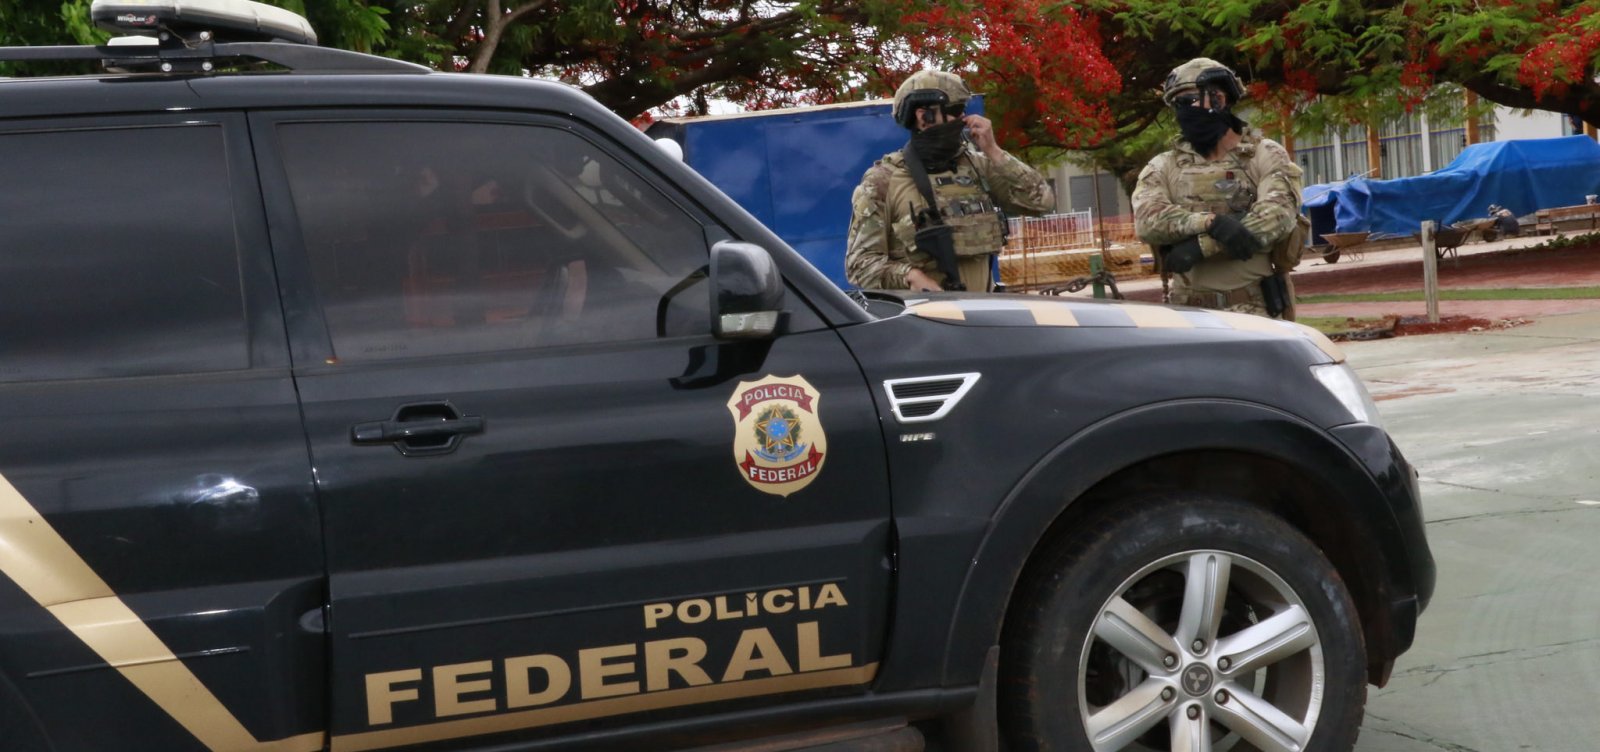 Polícia Federal realiza operação para apurar desvios de verbas federais em Itapebi.